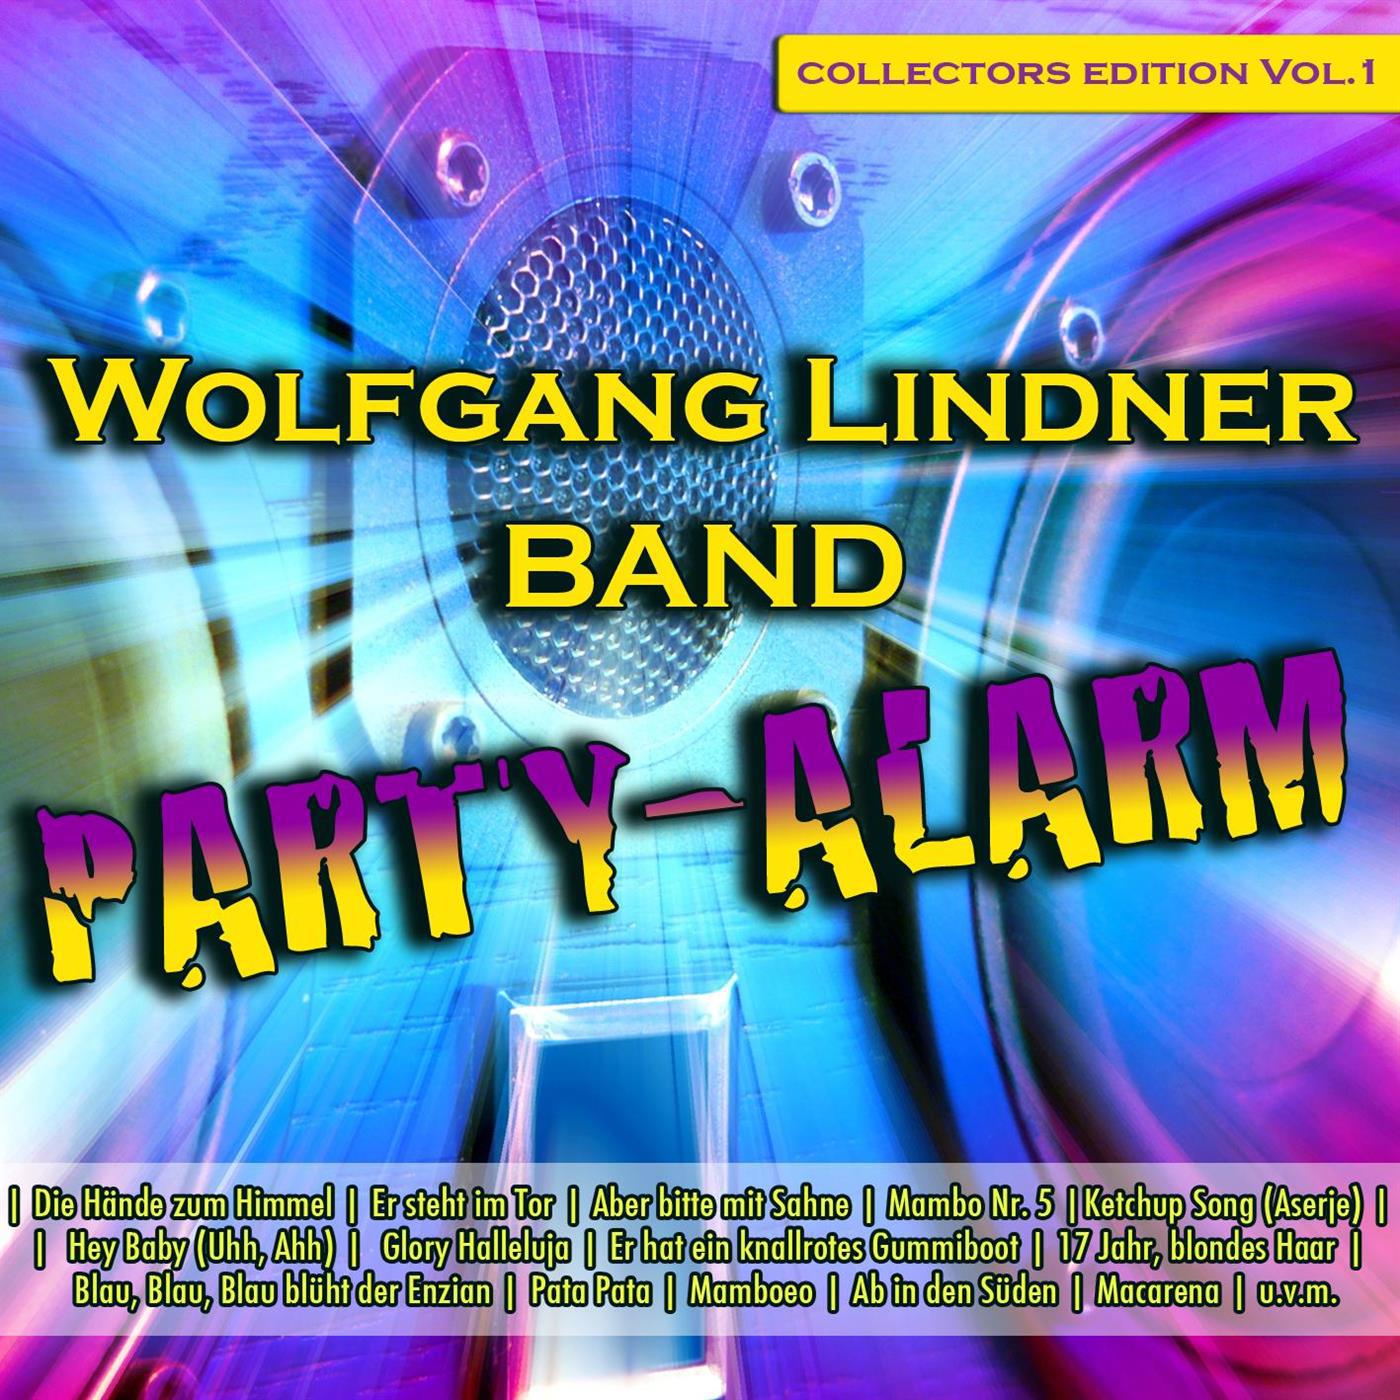 Wolfgang Lindner Band - Heino Hits ( 1. Blau blüht der Enzian / 2. Caramba, Caracho, ein Whiskey / 3. Bergvagabunden / 4. Tampico / 5. Die schwarze Barbara / 6. Glory Halleluja ) (Leopold Tobias)